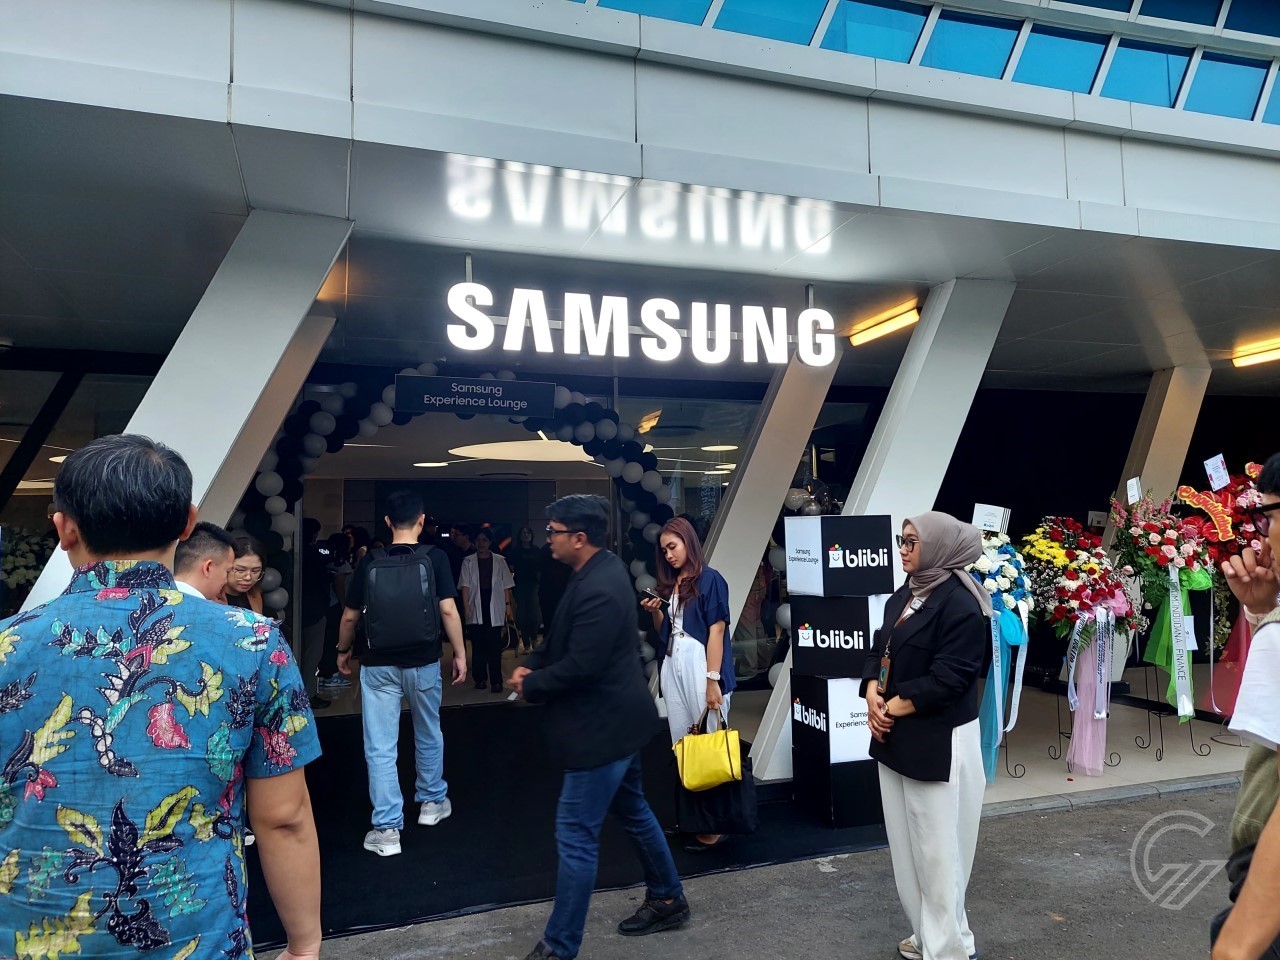 Samsung Experience Lounge Pertama di Indonesia Hadir di Pondok Indah Golf